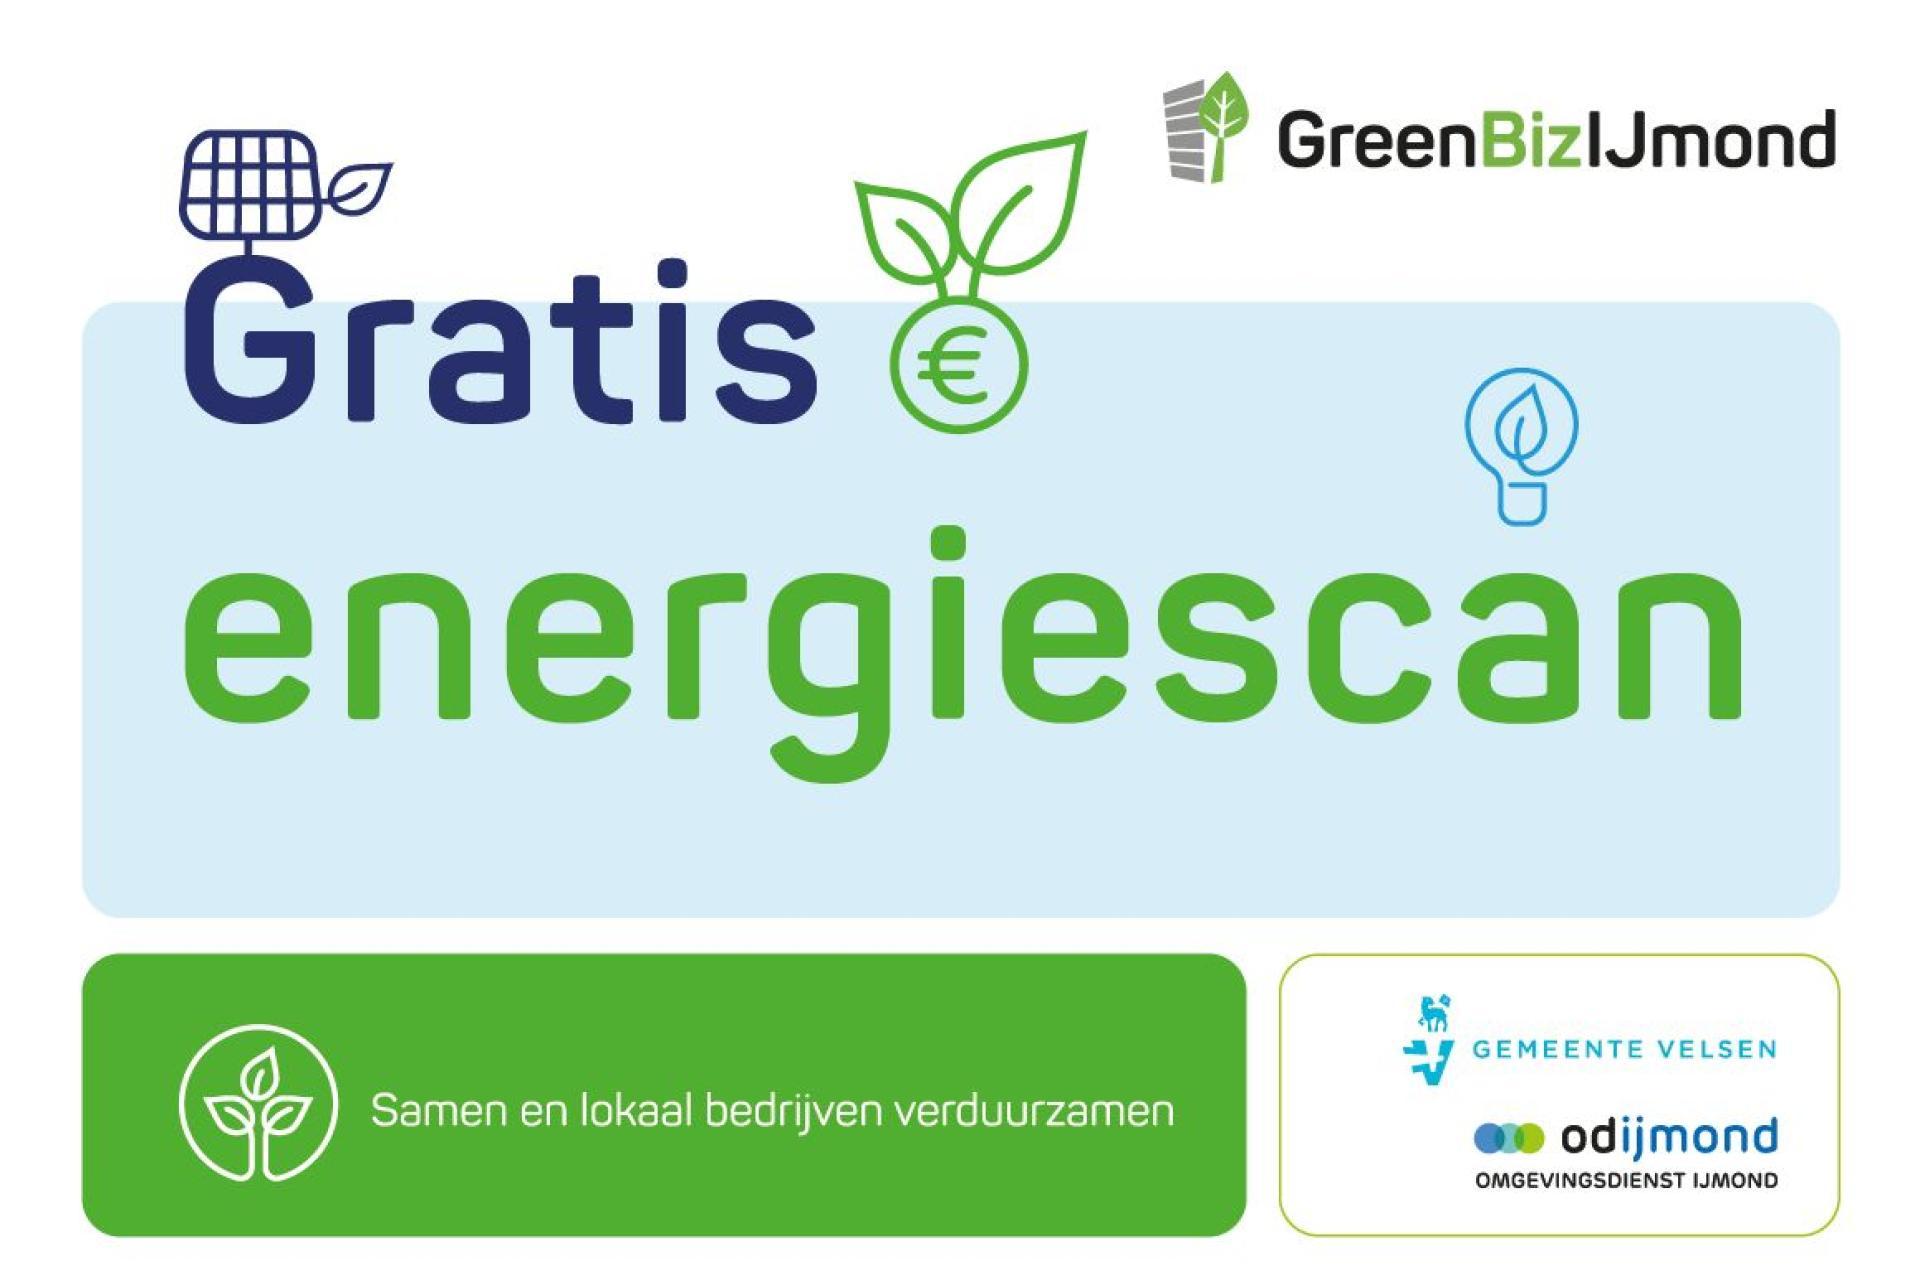 Afbeelding met de woorden: gratis energiescan, samen en lokaal bedrijven verduurzamen